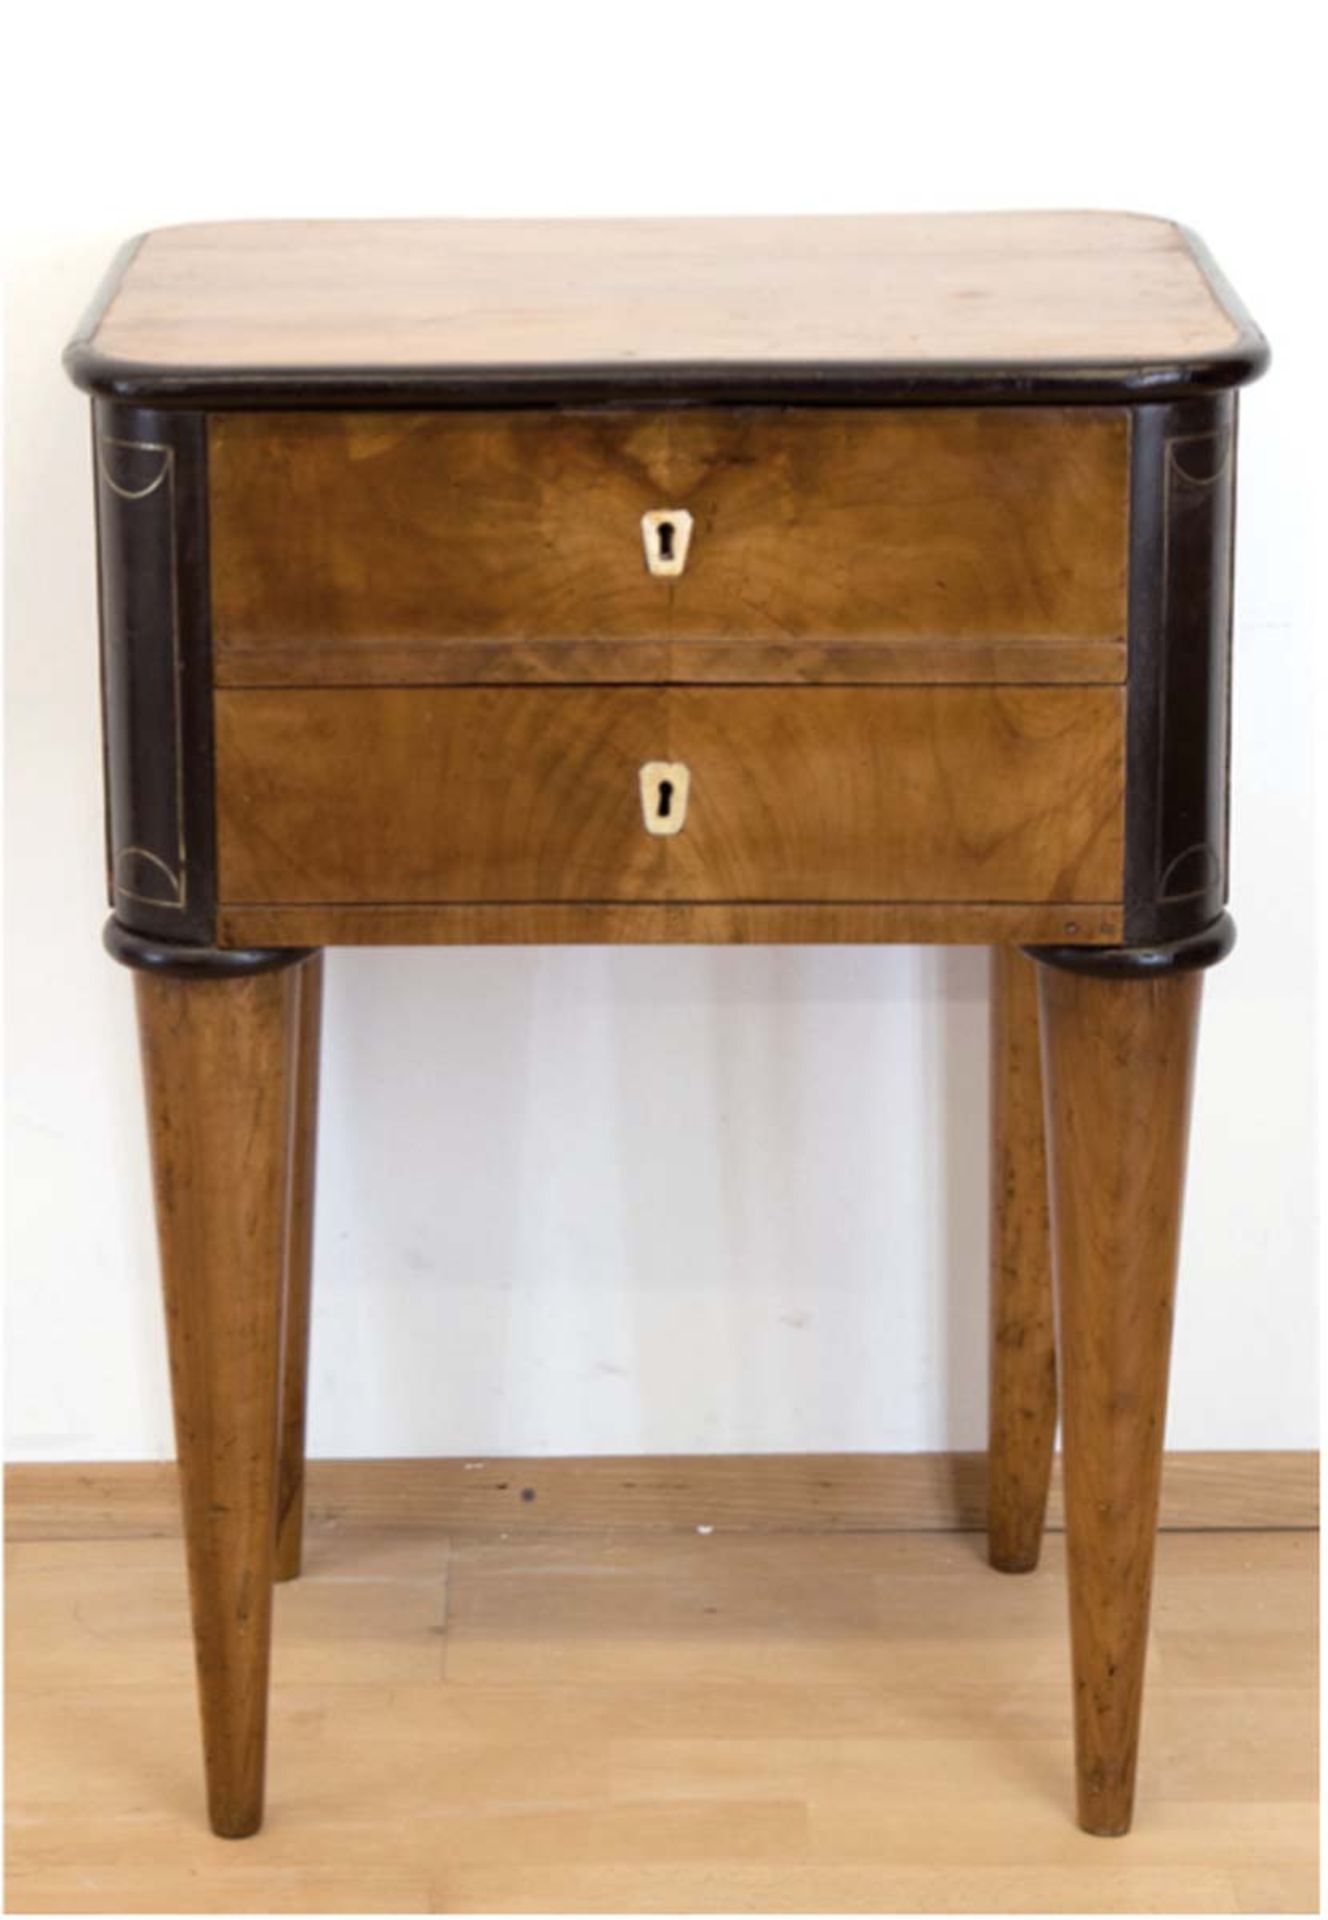 Verwandlungs-Möbel, um 1820, Kirsche massiv z.T. furniert, mit Messingeinlagen, Deckelaufklappbar, - Bild 2 aus 2